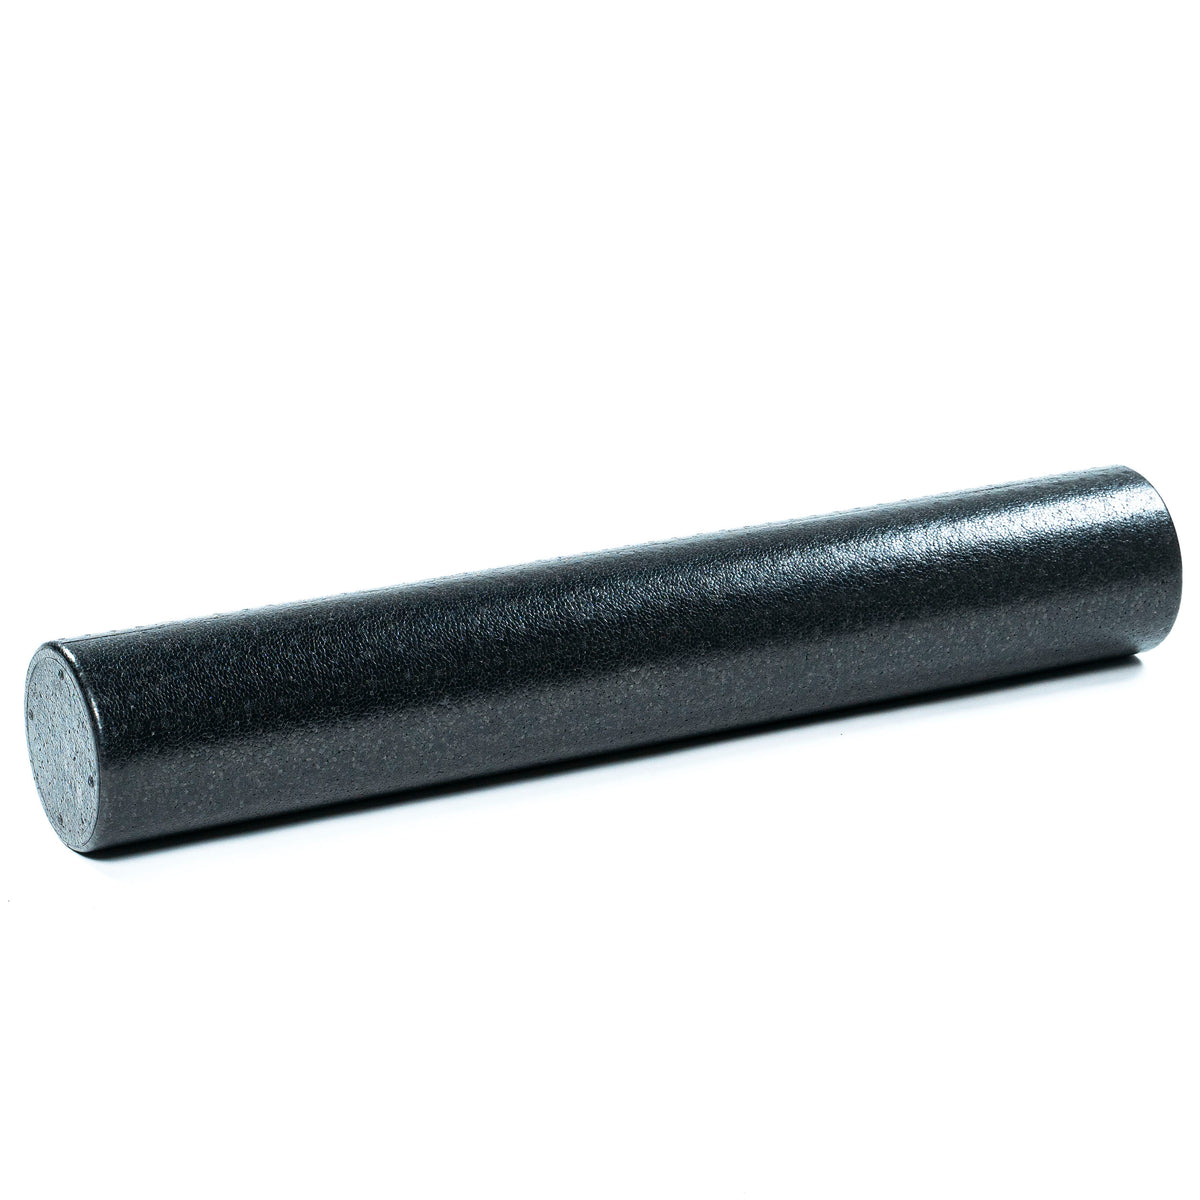 FitWay Equip. Black Foam Roller - 90cm 